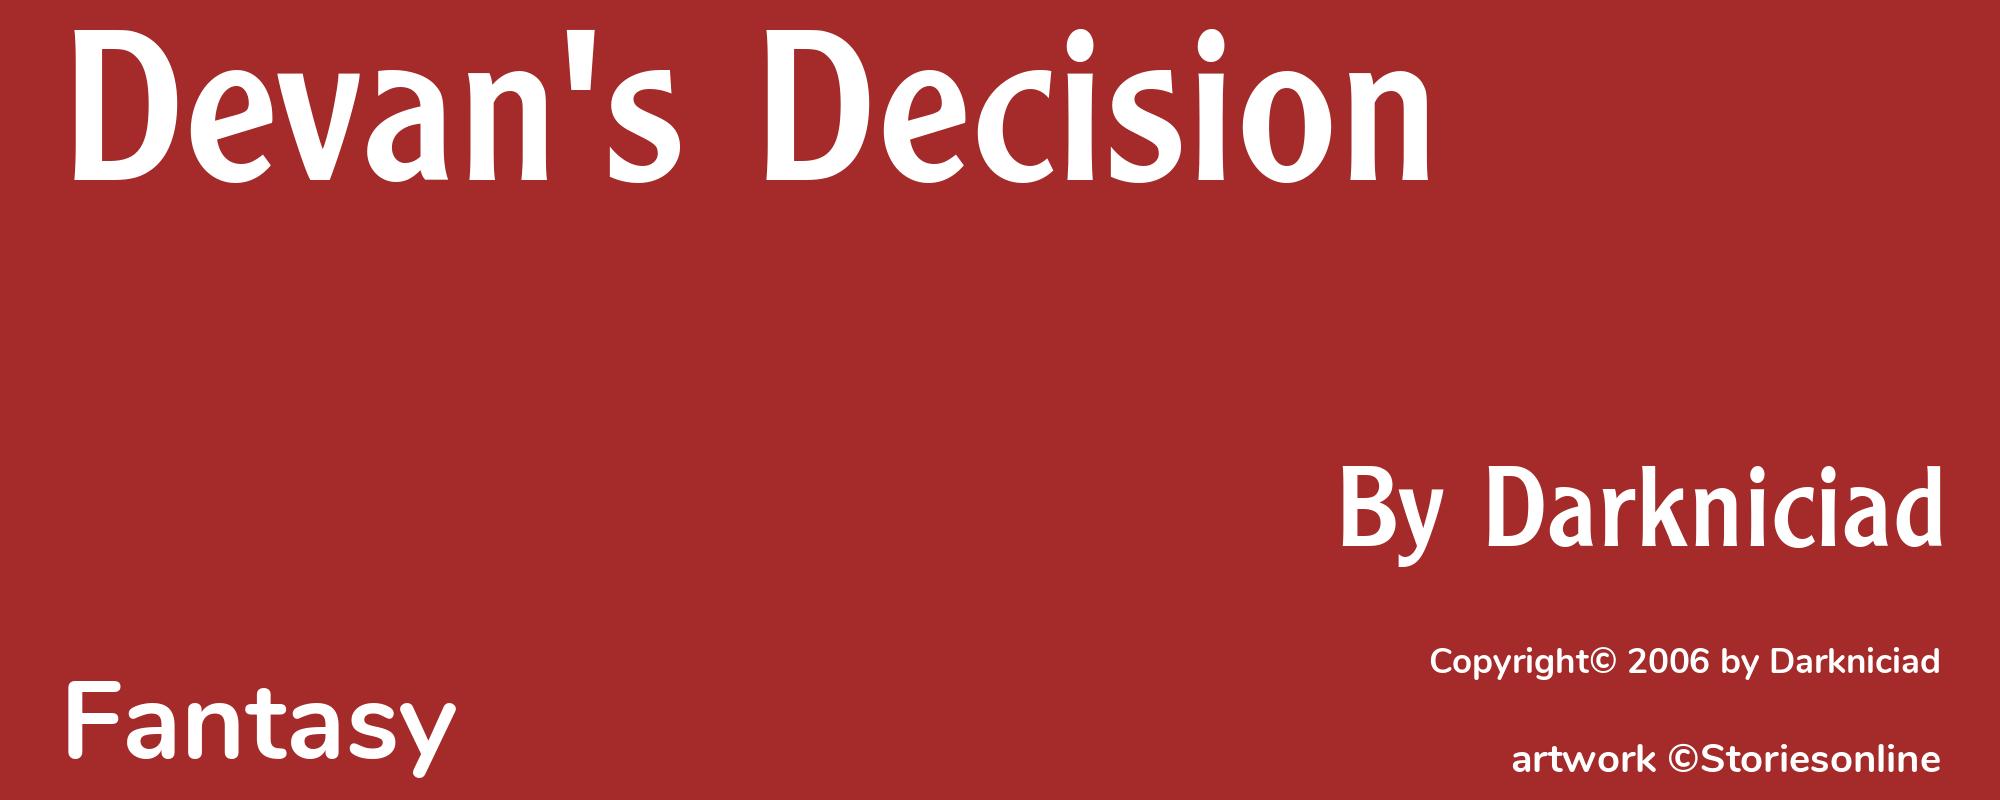 Devan's Decision - Cover